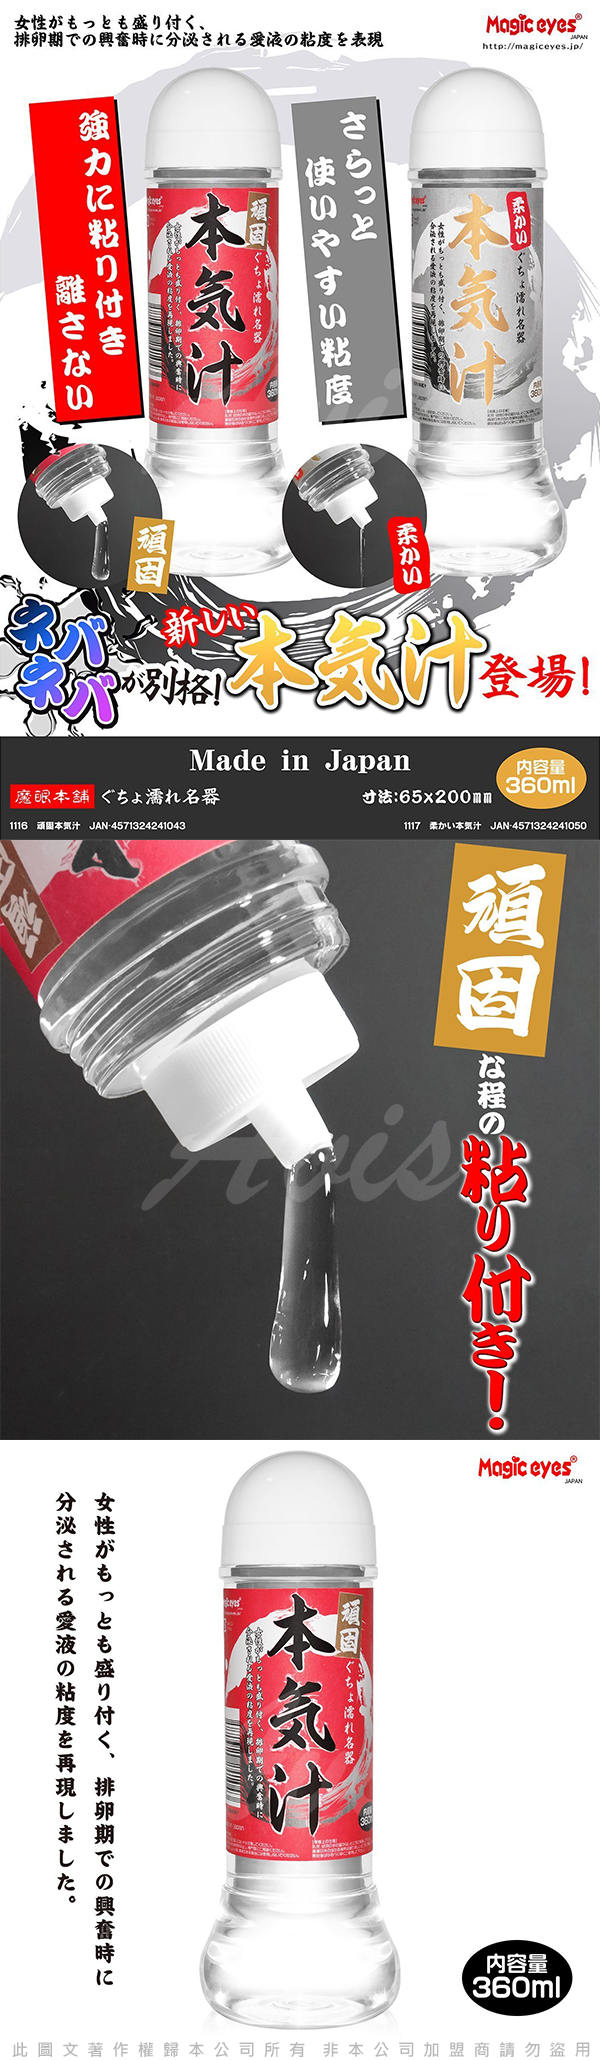 日本Magic eyes 本氣汁潤滑液 360ml 超強黏度 紅